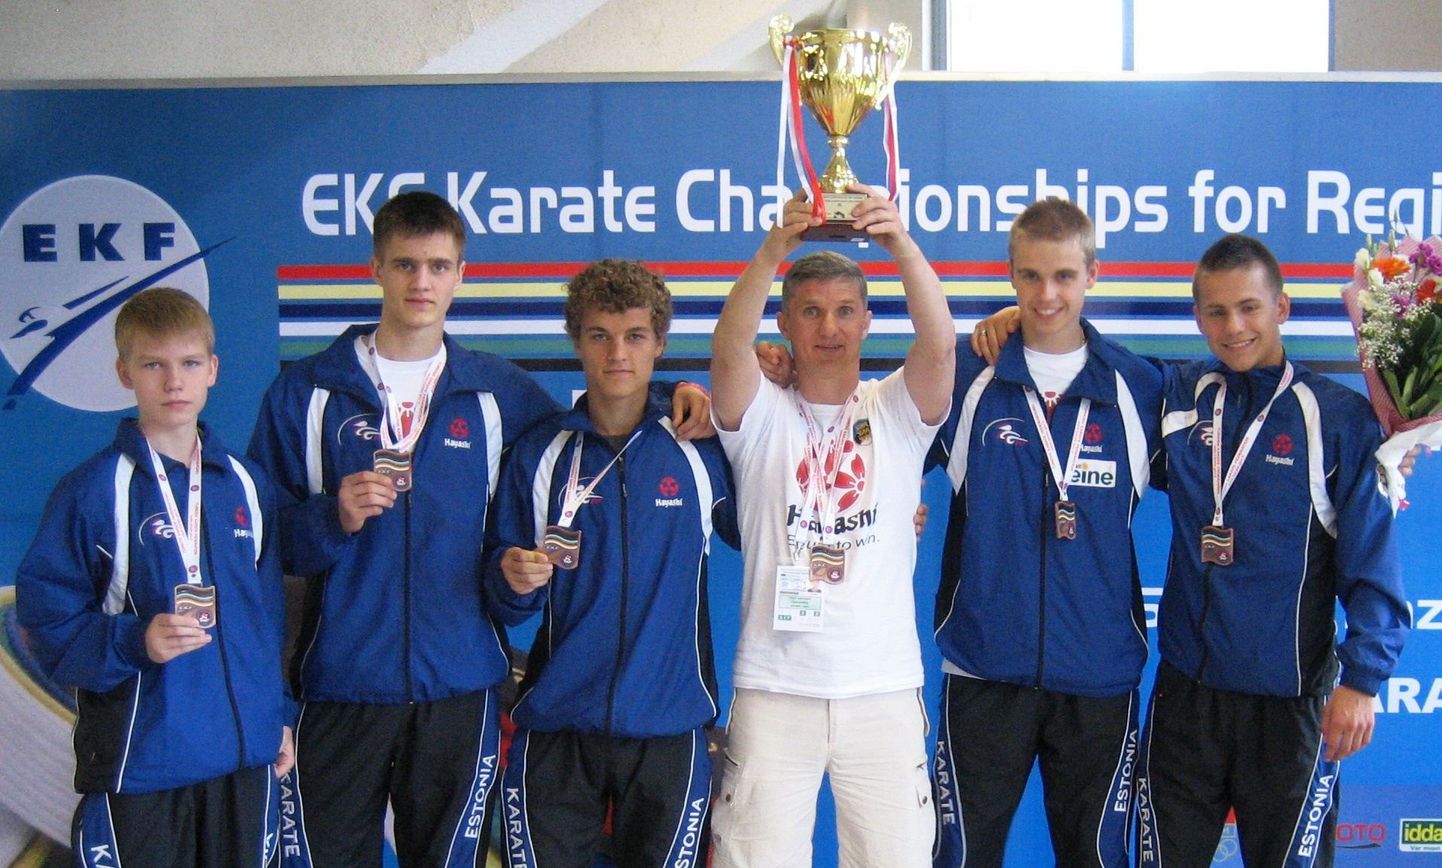 Слева направо: Роберт Денисов, Дмитрий Воронин, Марко Пяхламяги, Александр Зыков, Танель Паабо, Михкель Лийваканд.